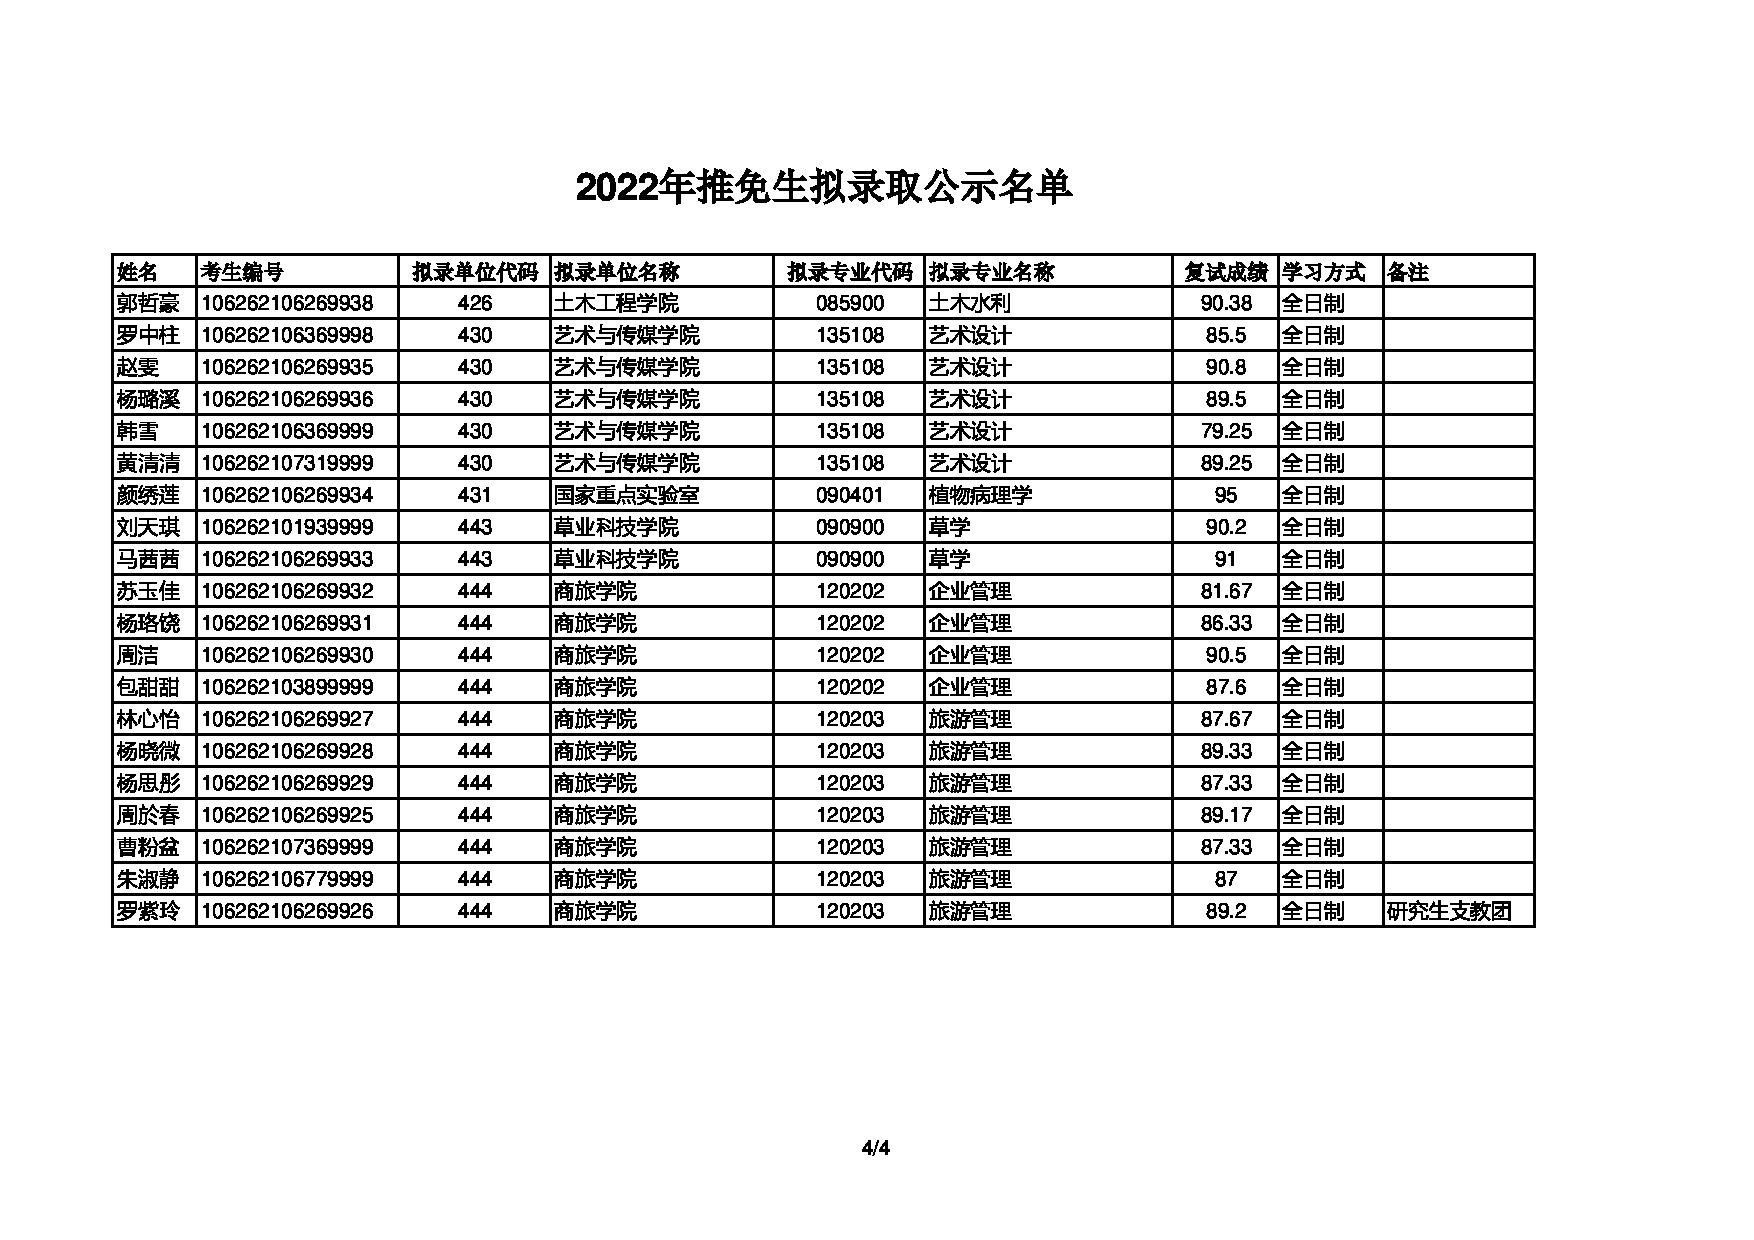 2022考研拟录取名单：四川农业大学2022年推免生拟录取名单第4页